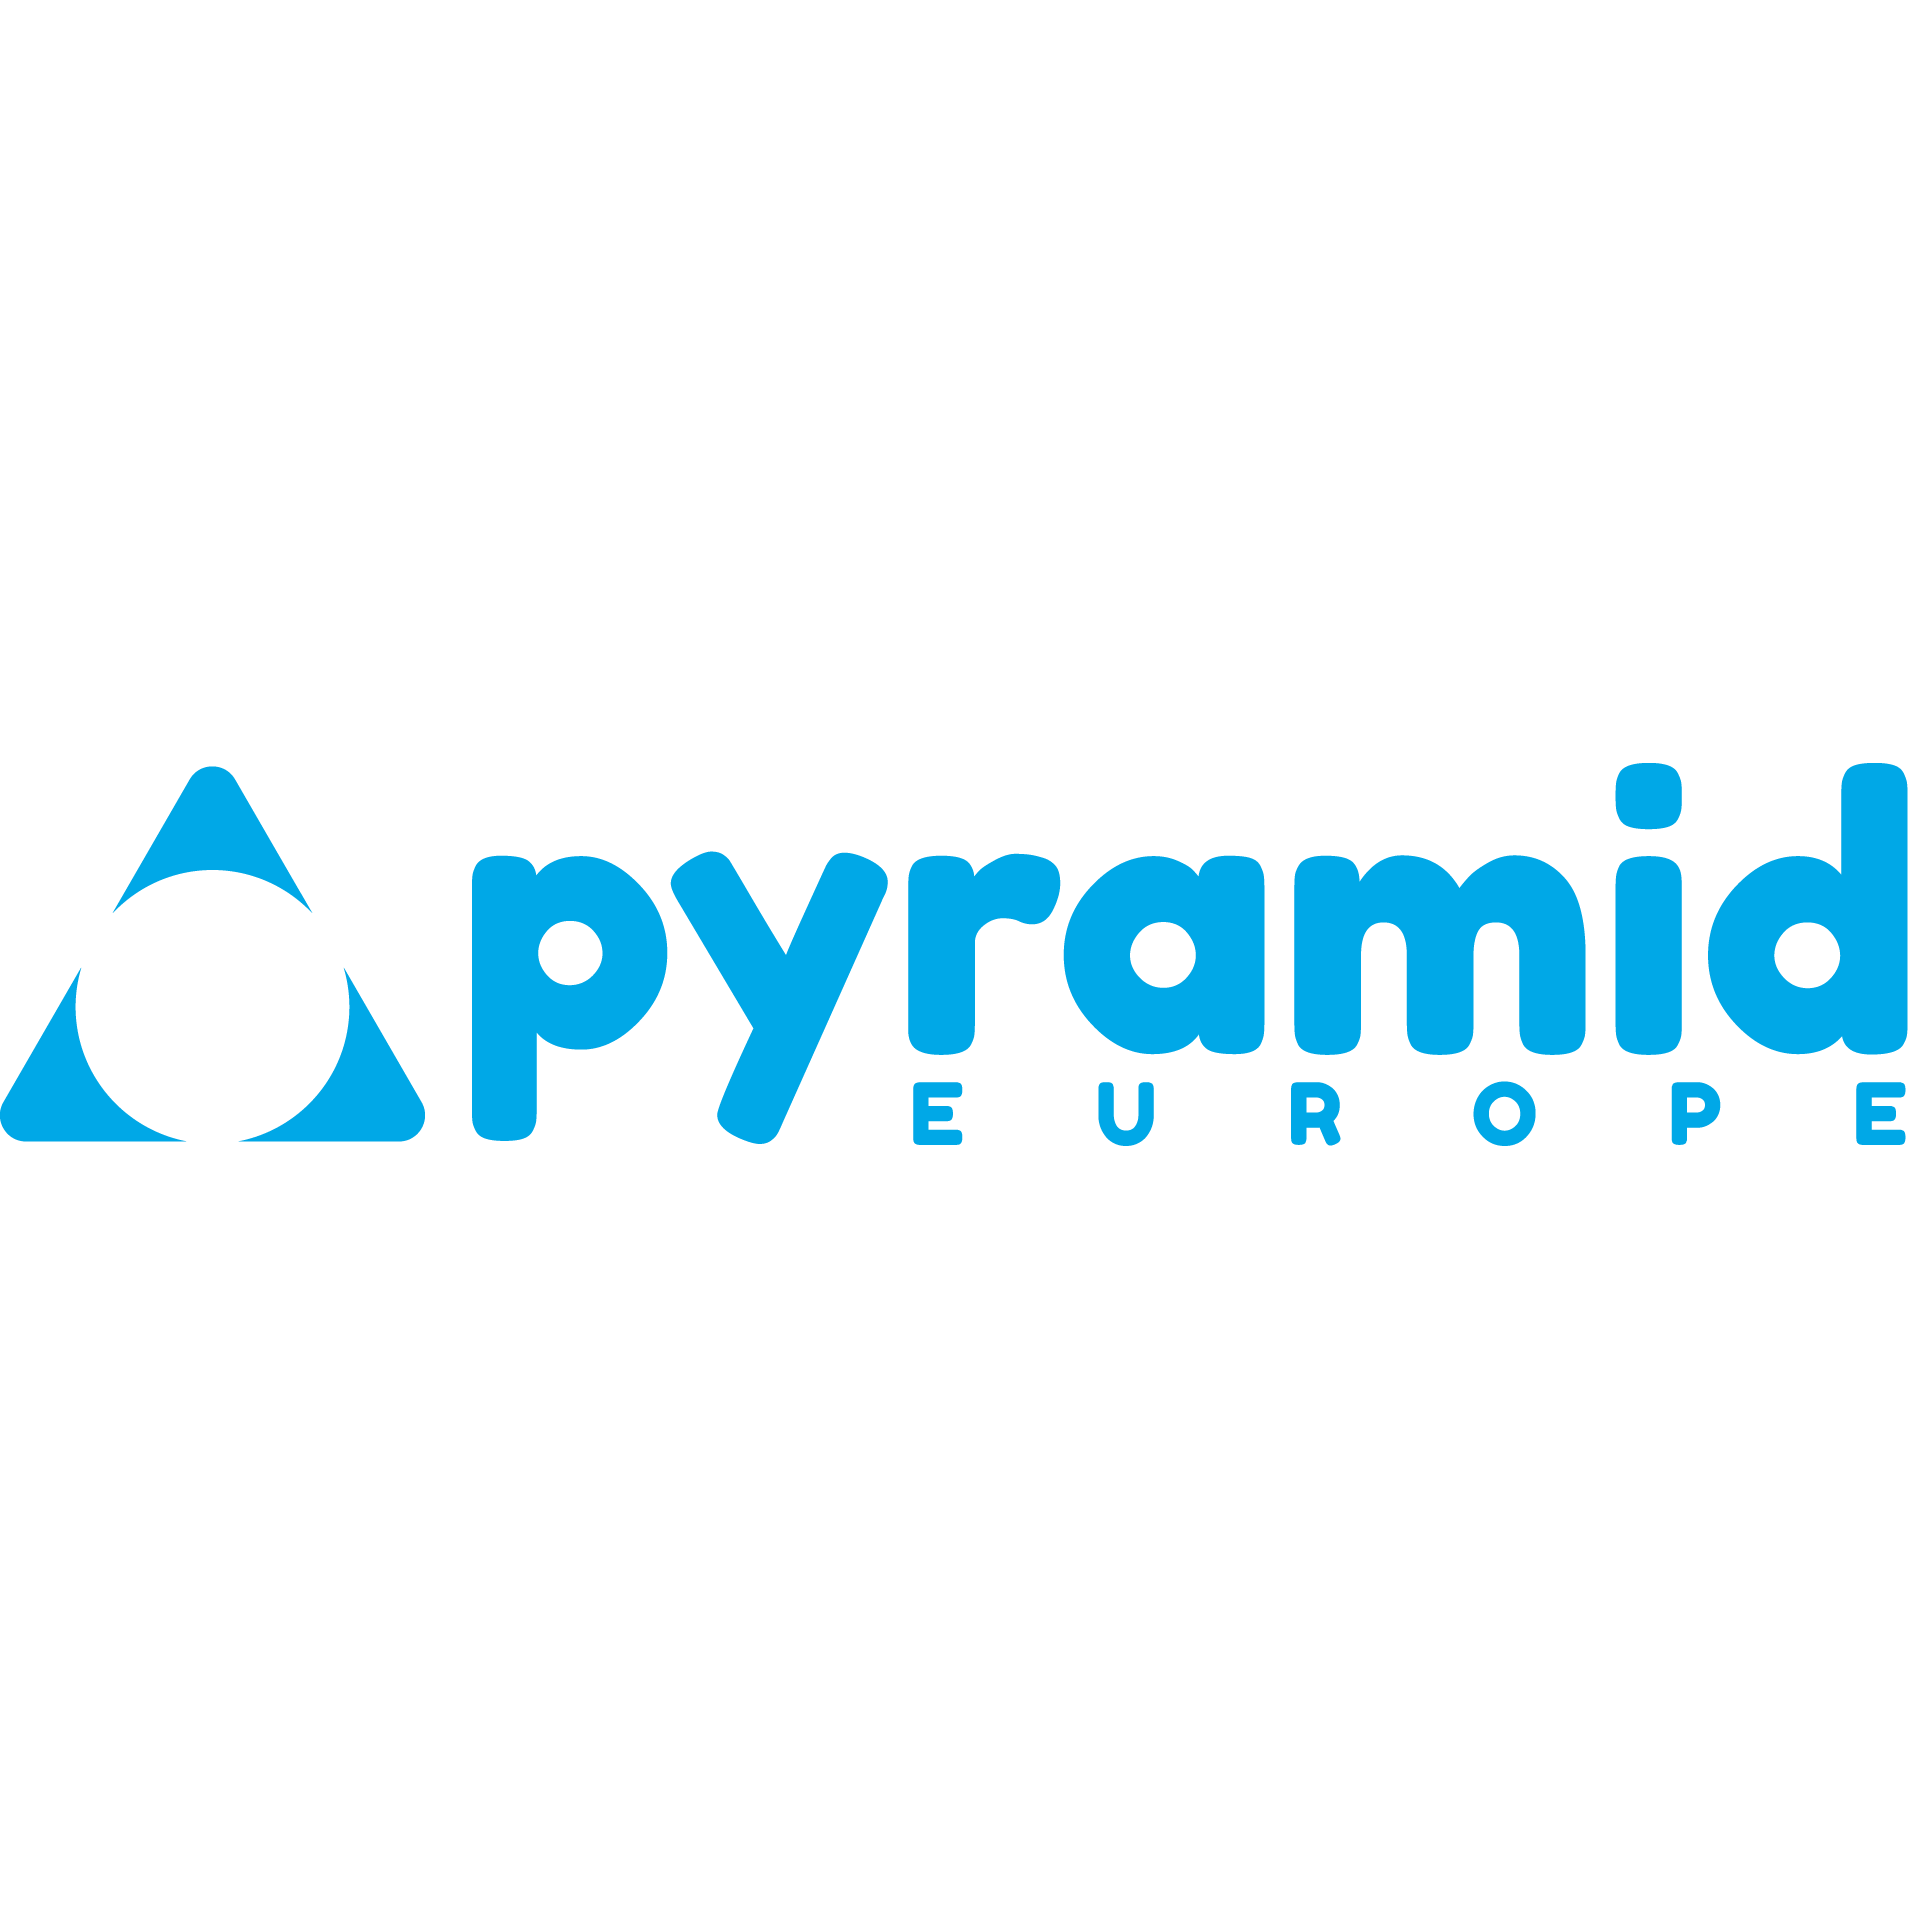 Pyramid Europe GmbH